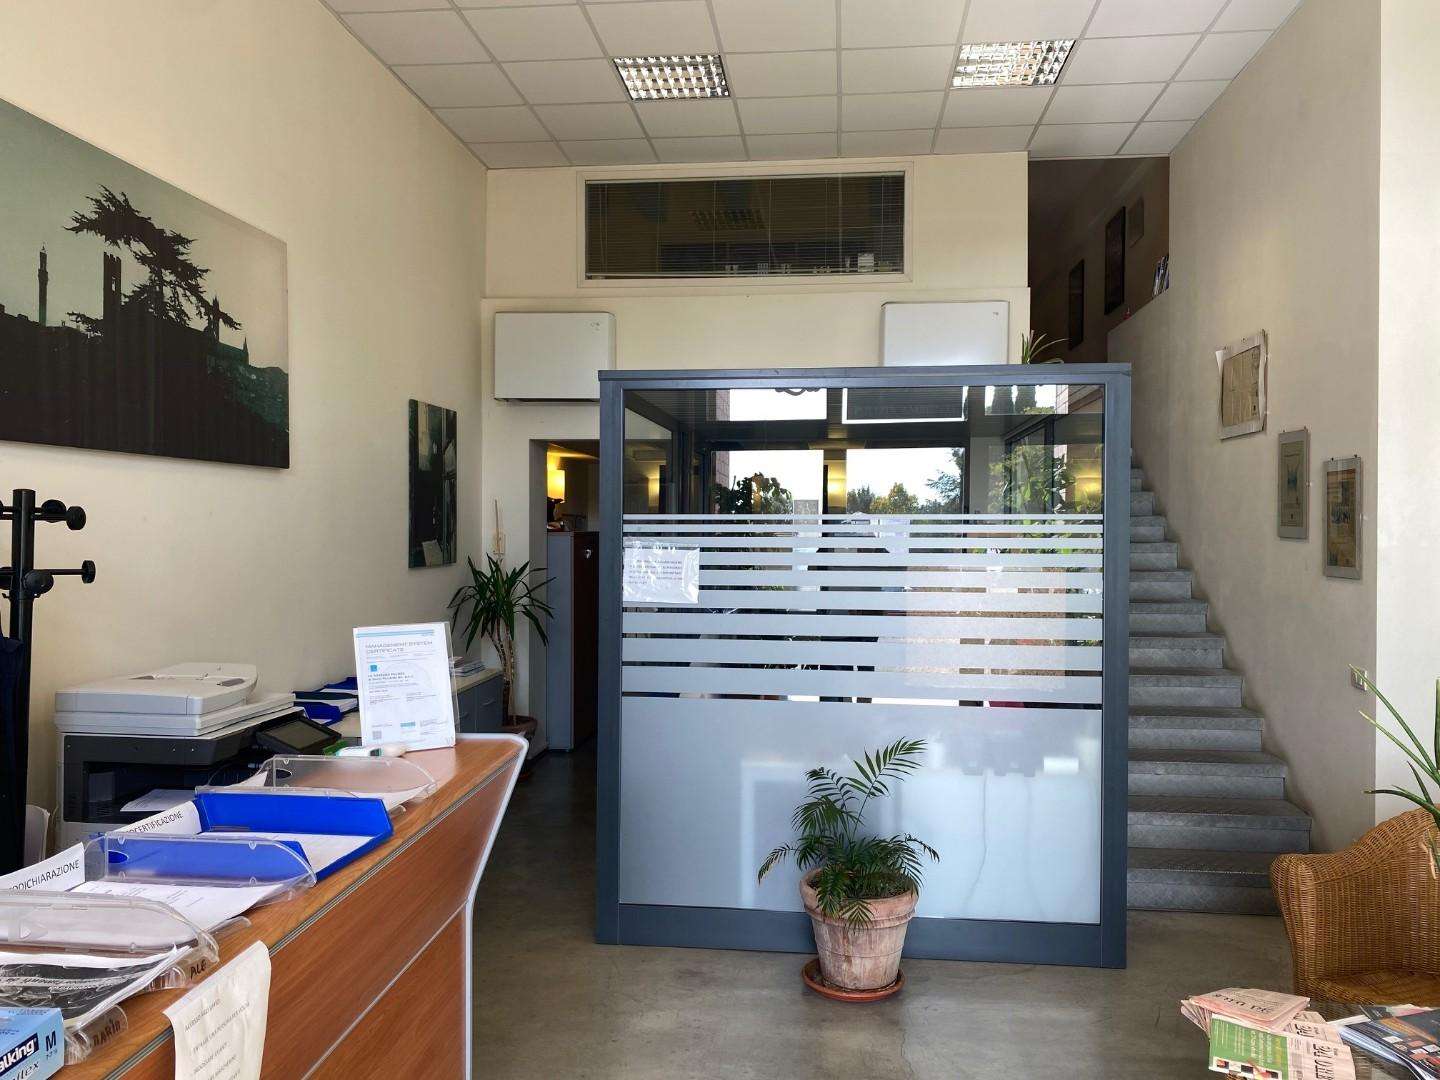 Laboratorio in Affitto a Siena Siena SI, 53100